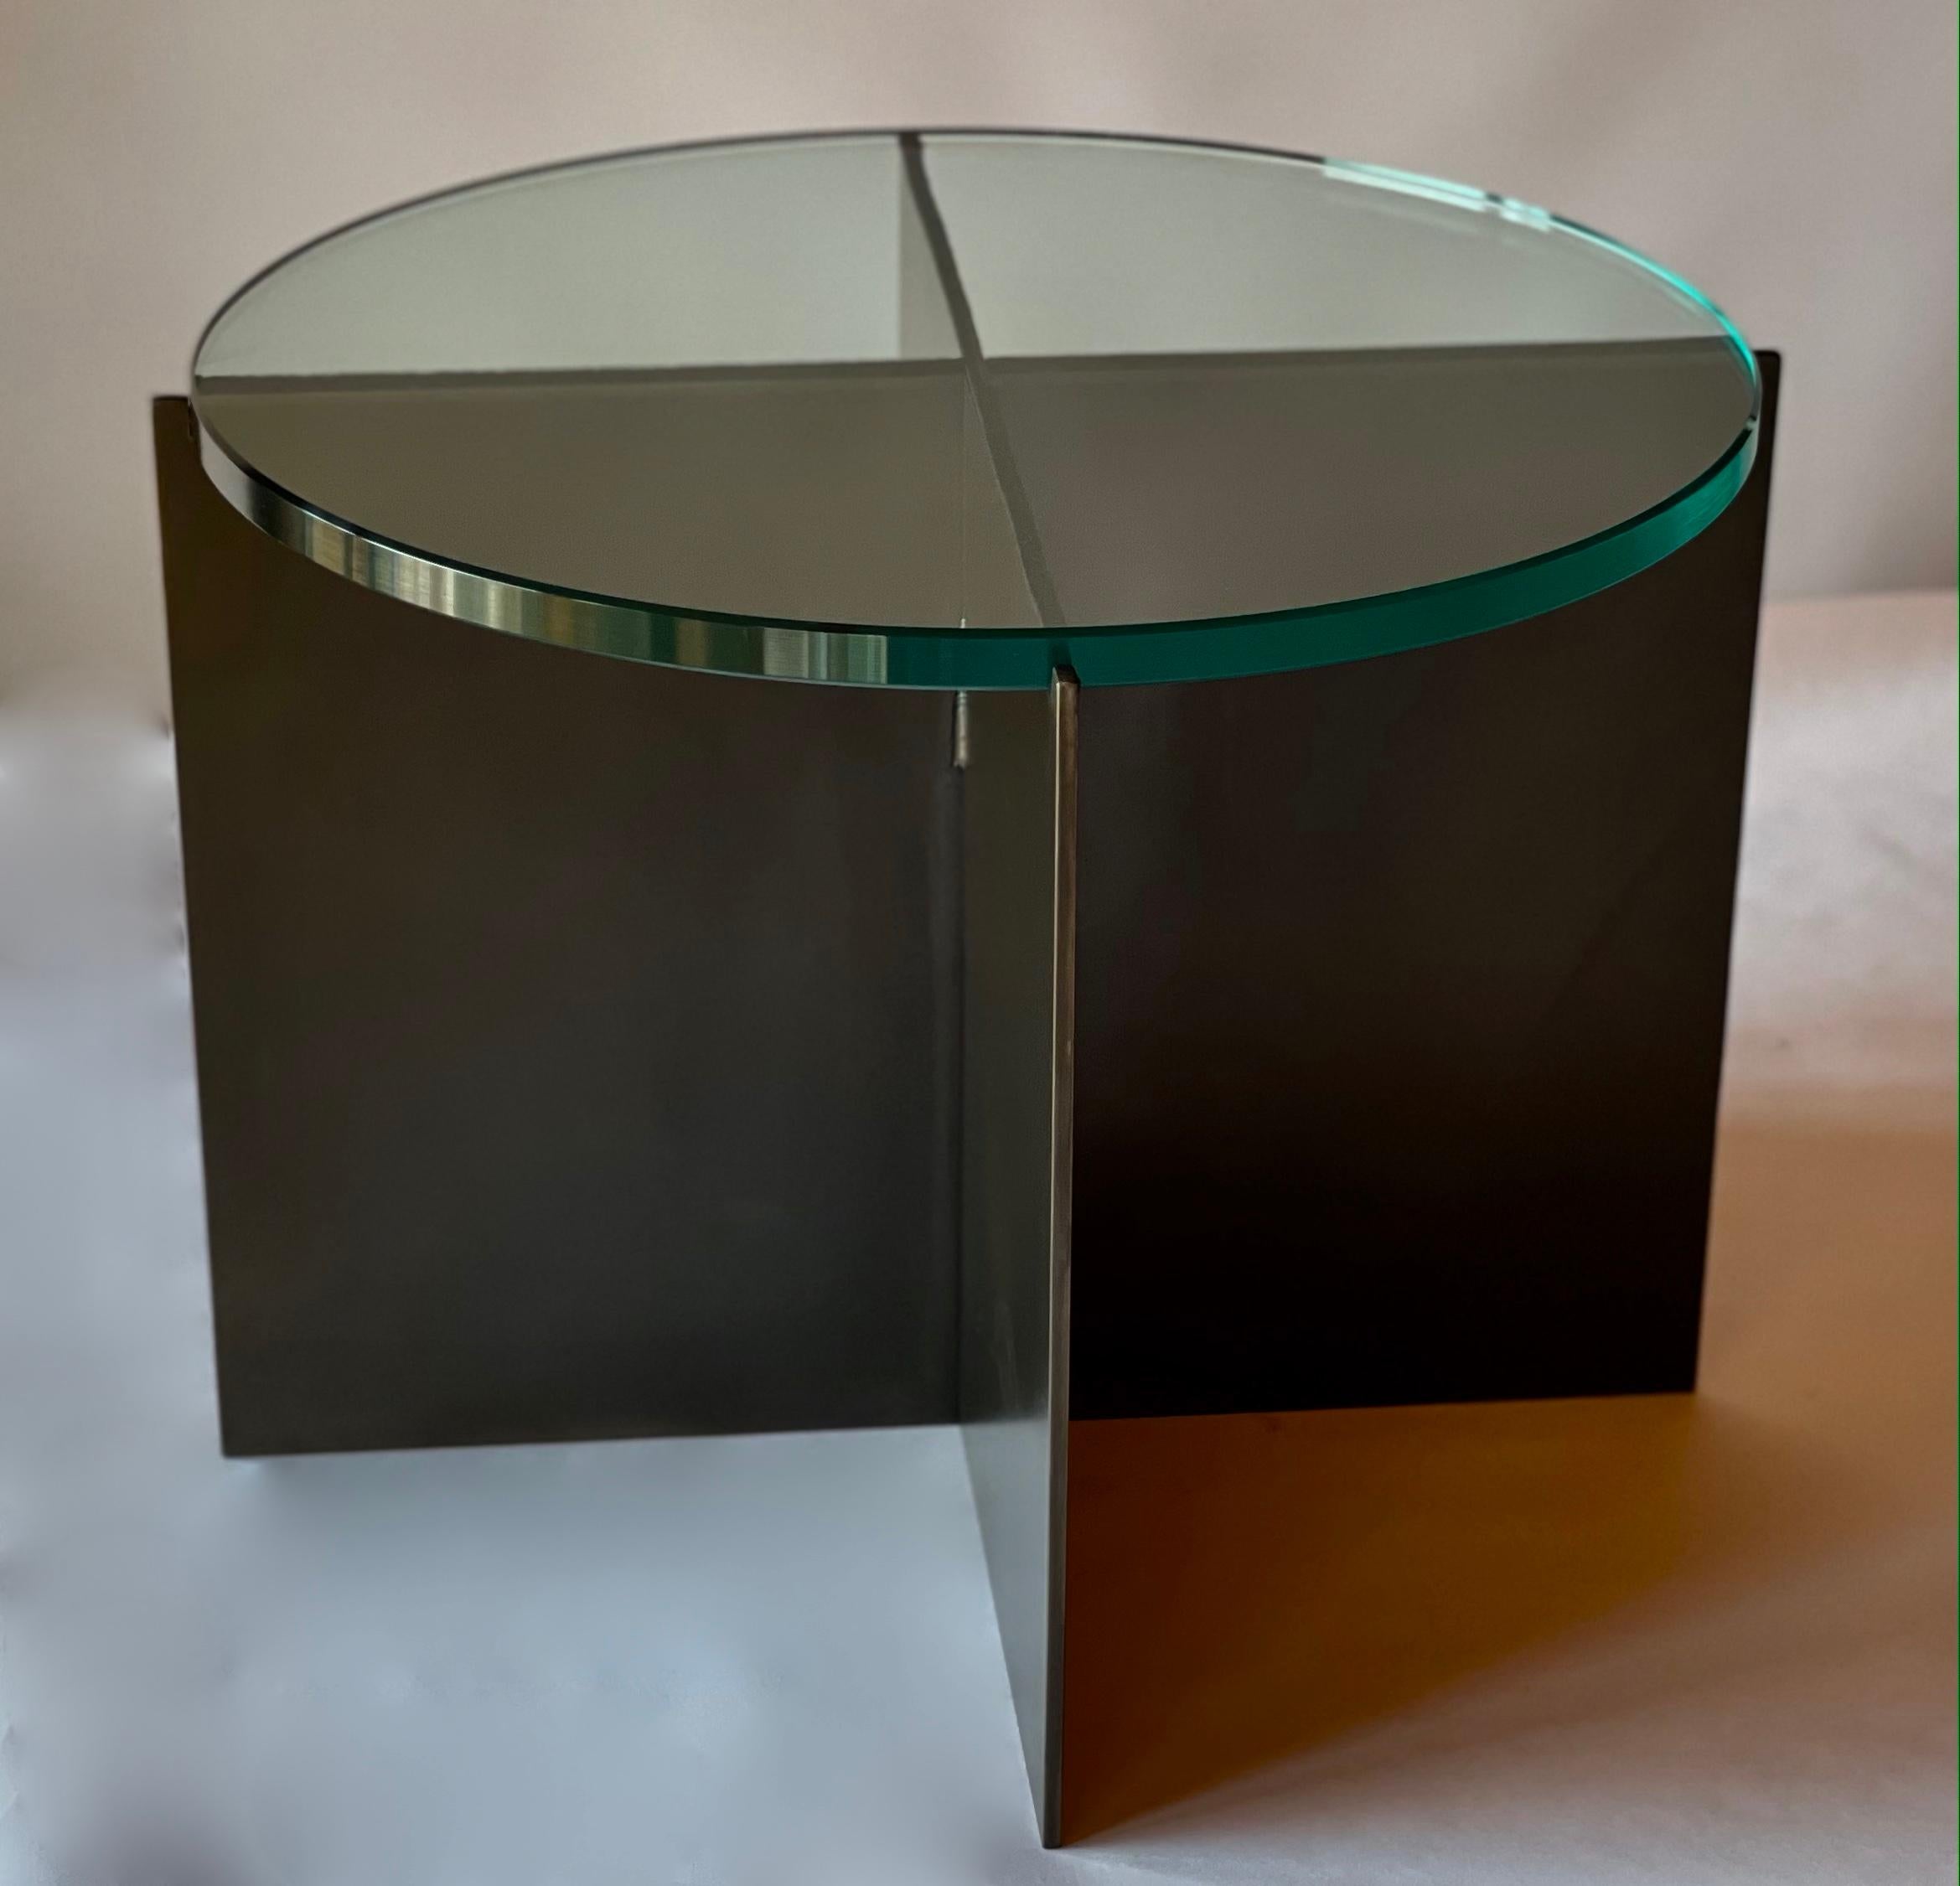 La Mesa Cocktail Crux, un diseño original ofrecido en exclusiva por Vermontica, es una mesa auxiliar minimalista contemporánea de acero ennegrecido y cristal diseñada y producida en Vermont por Scott Gordon. La base es de chapa de acero ennegrecido